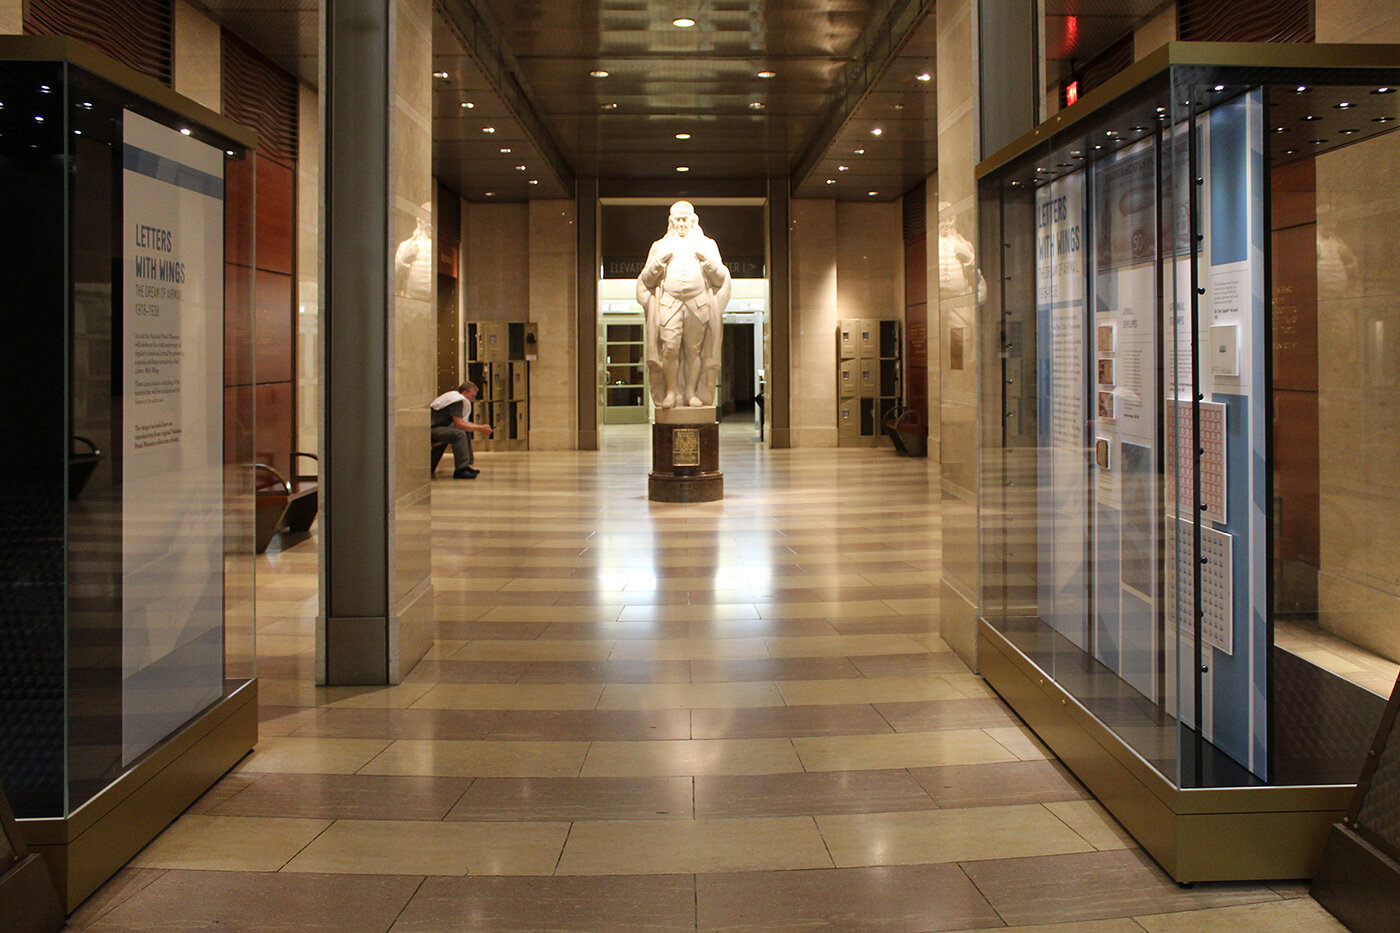 Franklin Foyer